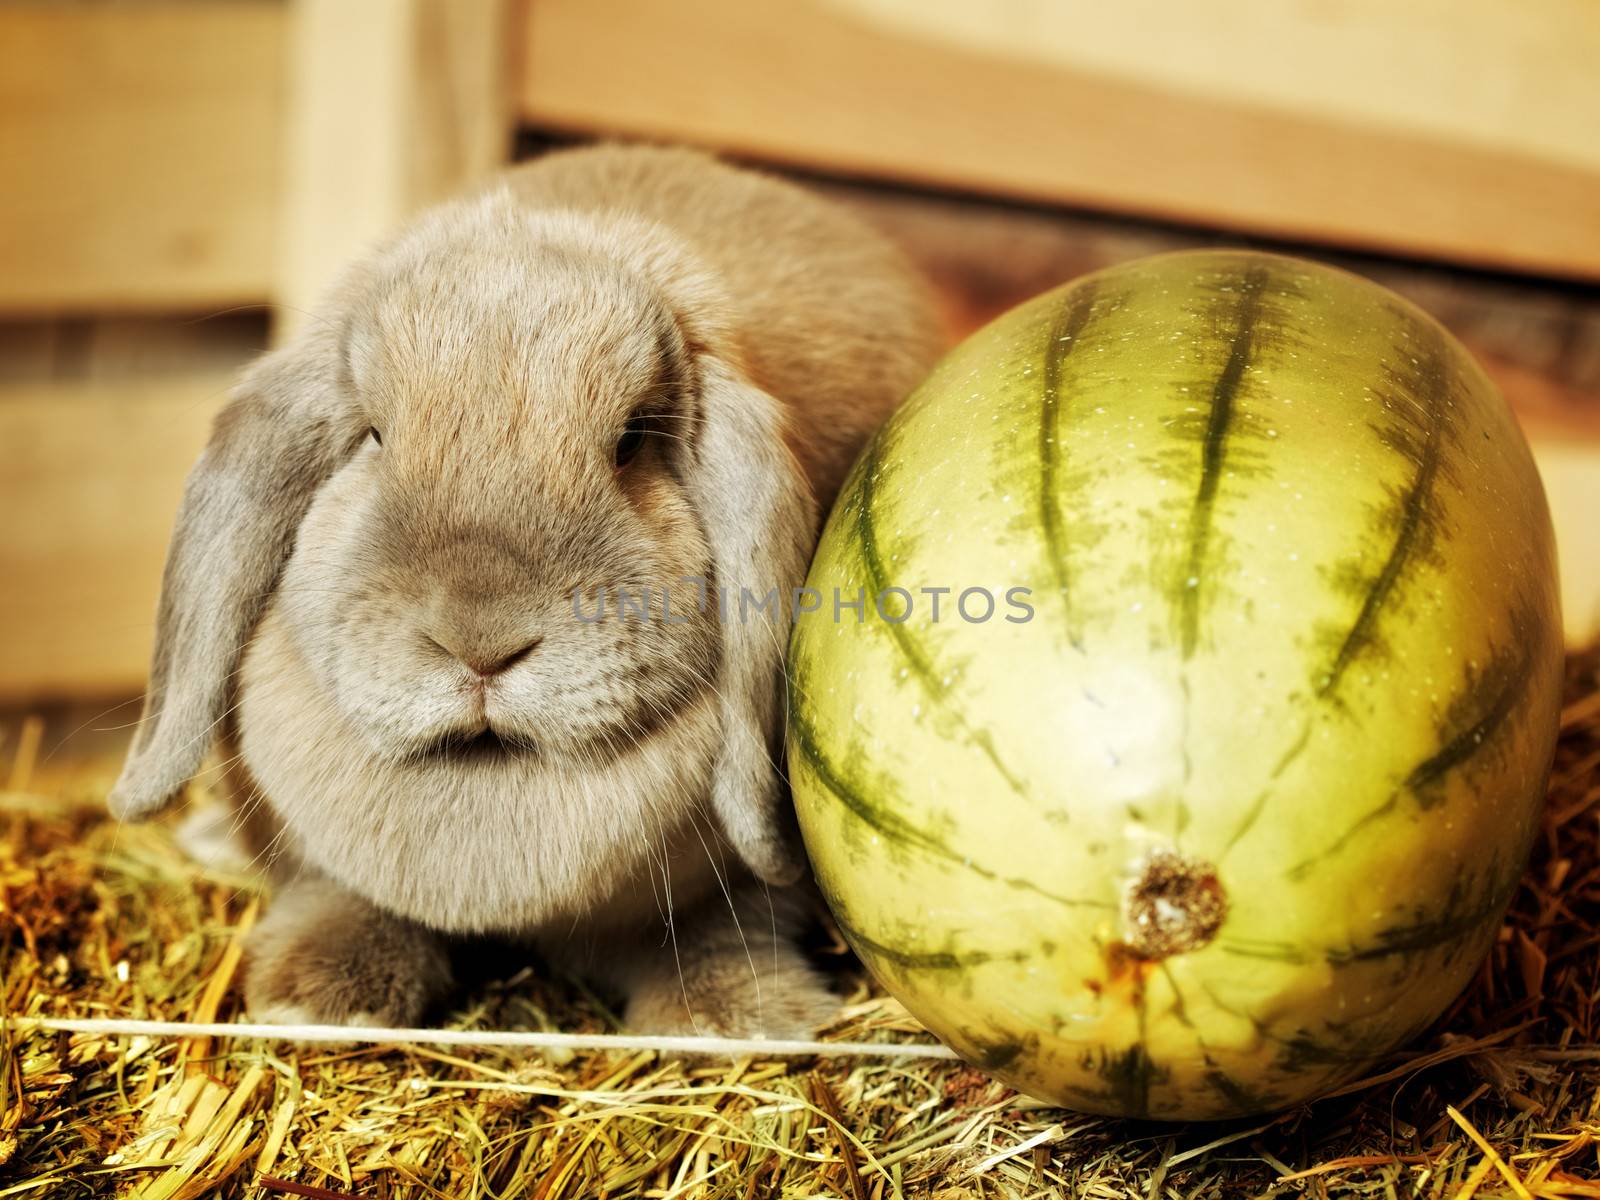 gray lop-earred rabbit on hayloft, rural scene